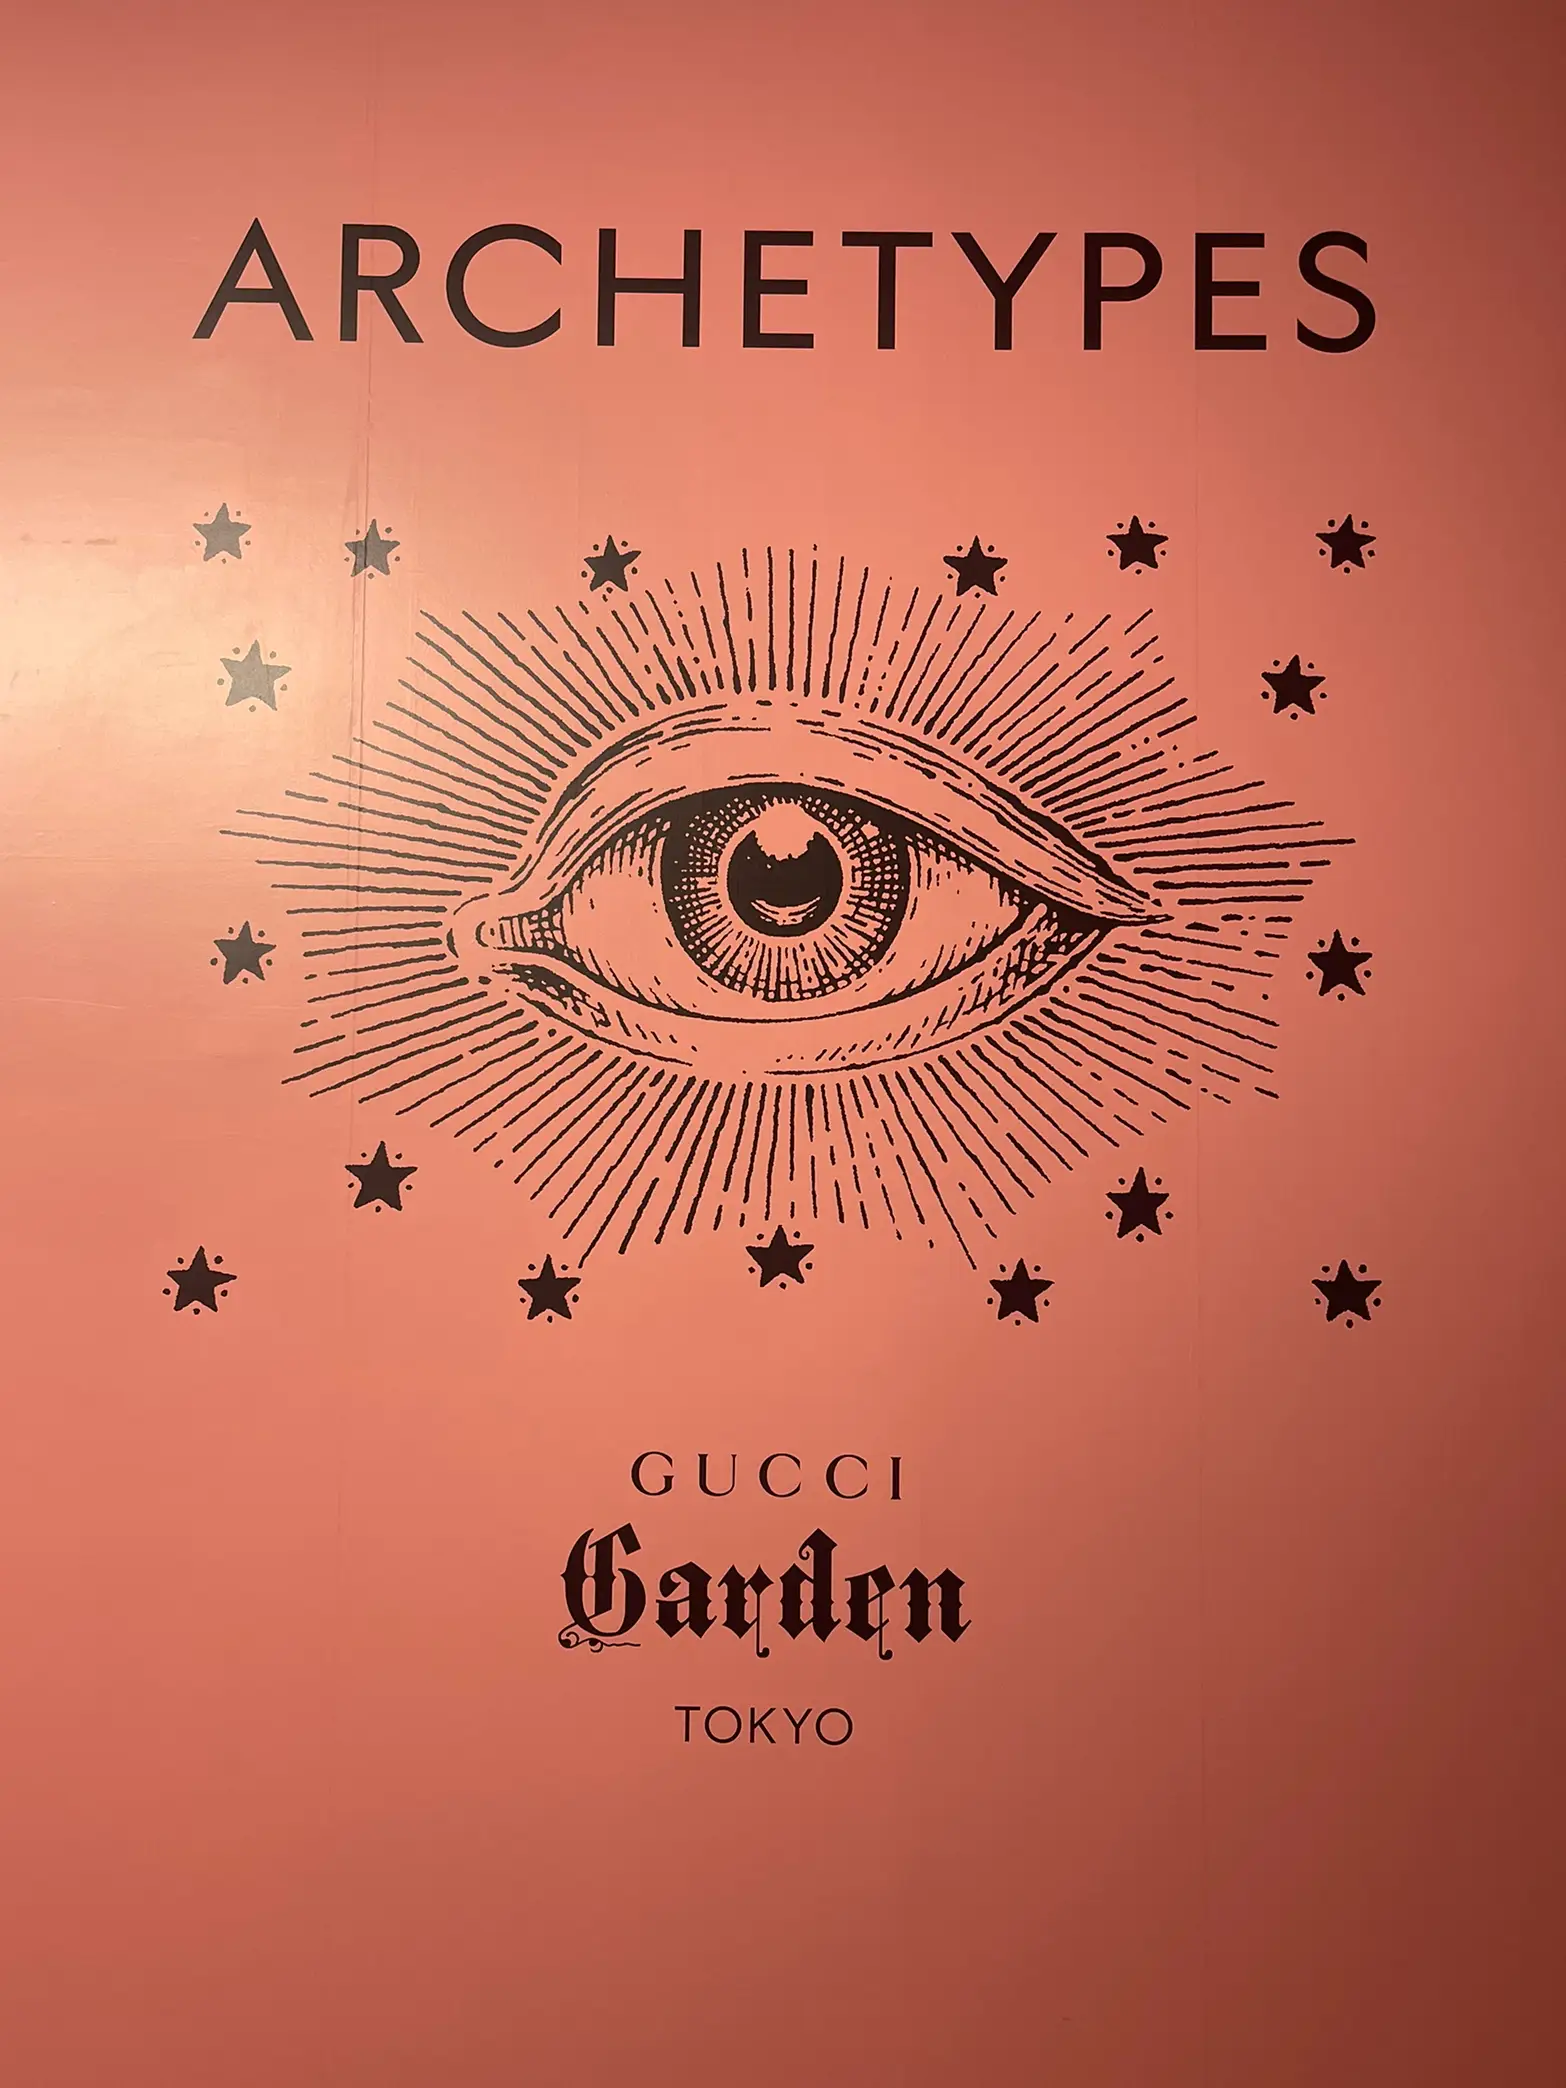 【東京】「Gucci Garden Archetypes」展 in TOKYOの画像 (3枚目)